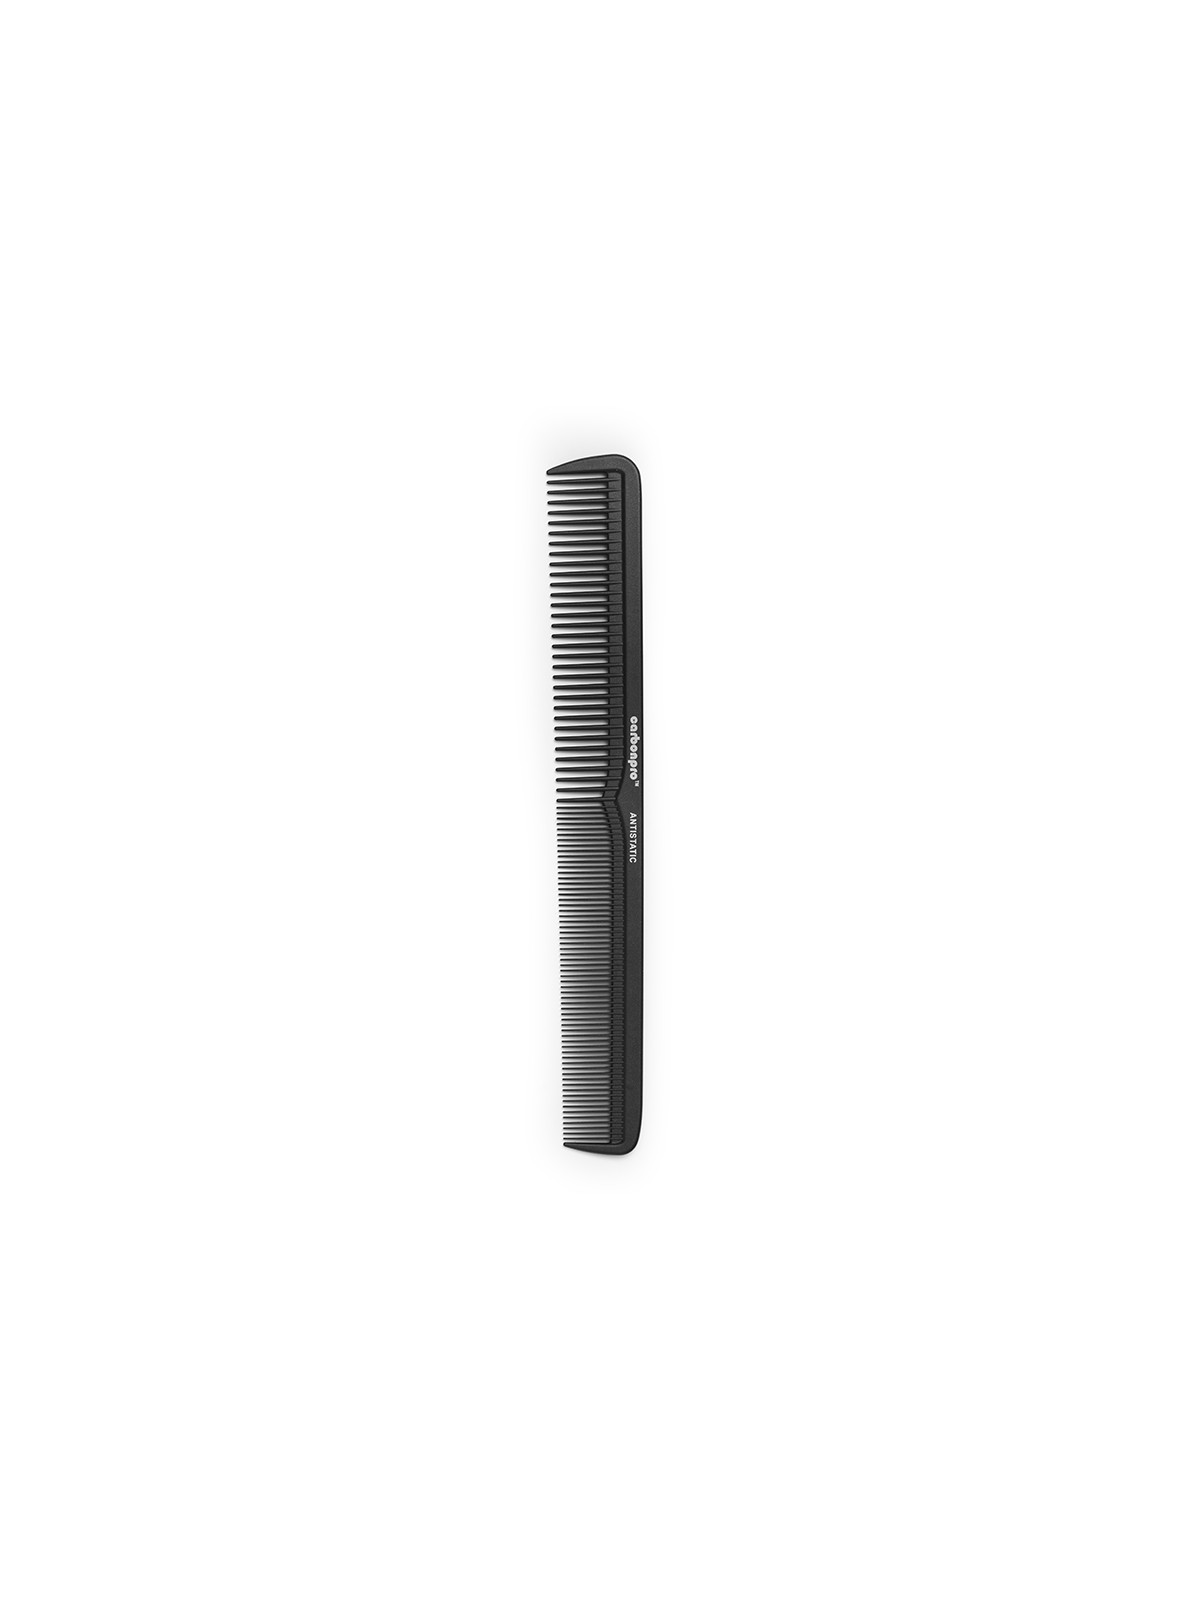 Carbonpro 7 Cutting Comb